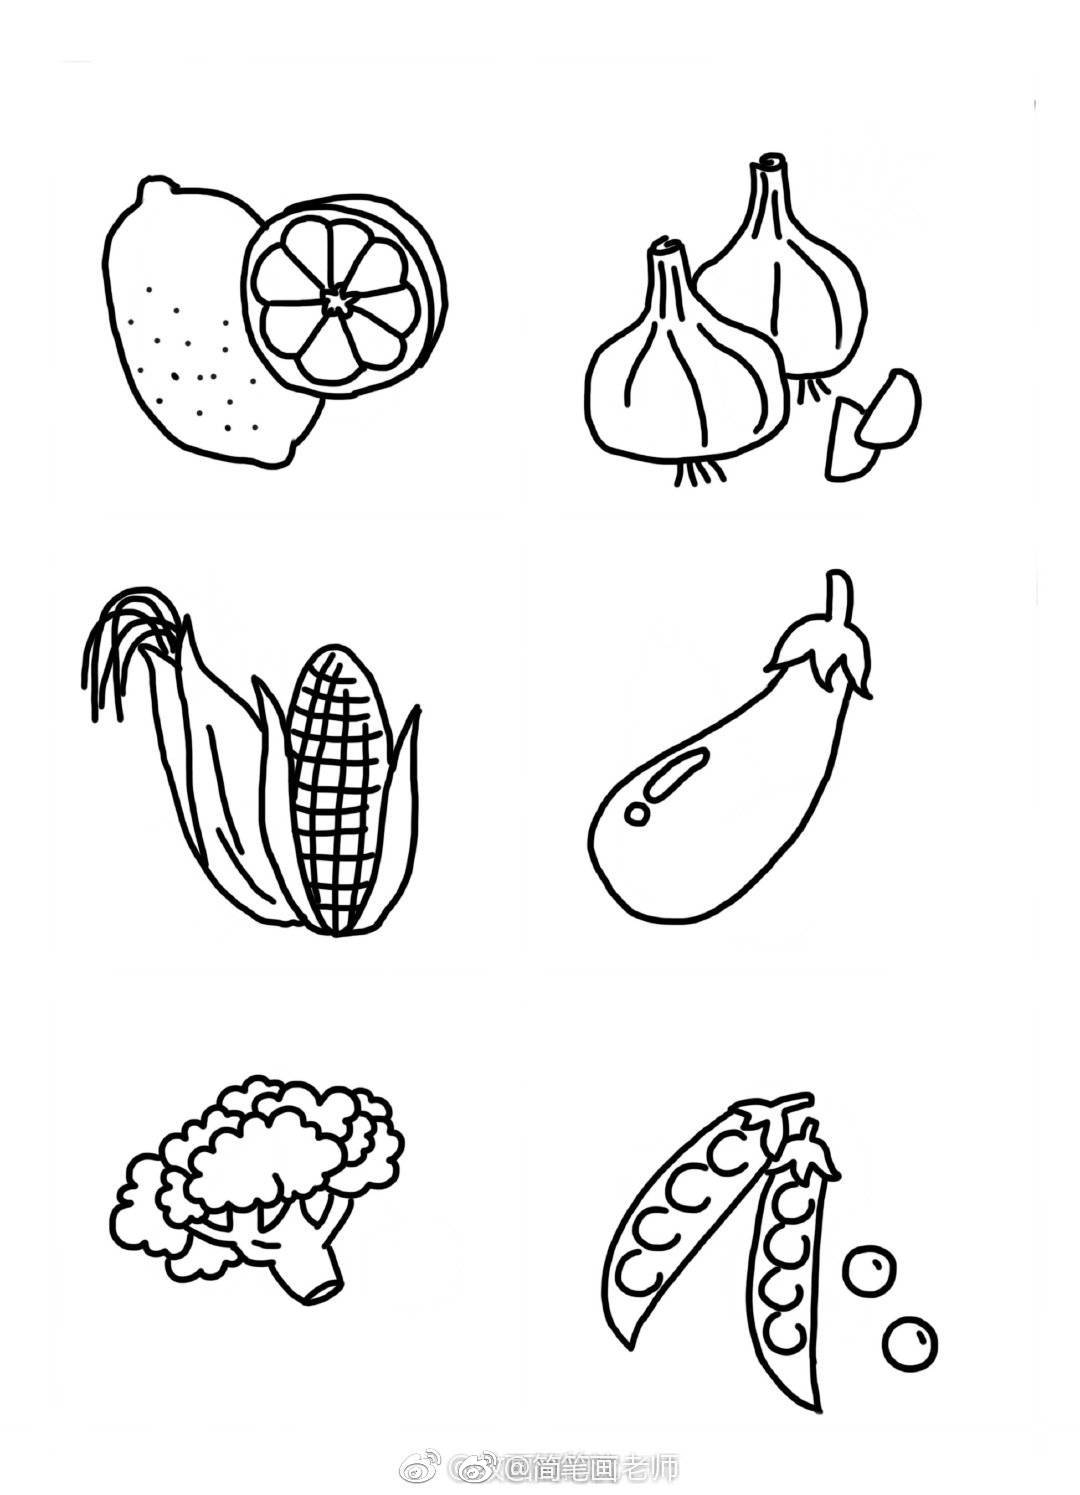 蔬菜水果组合简笔画图片